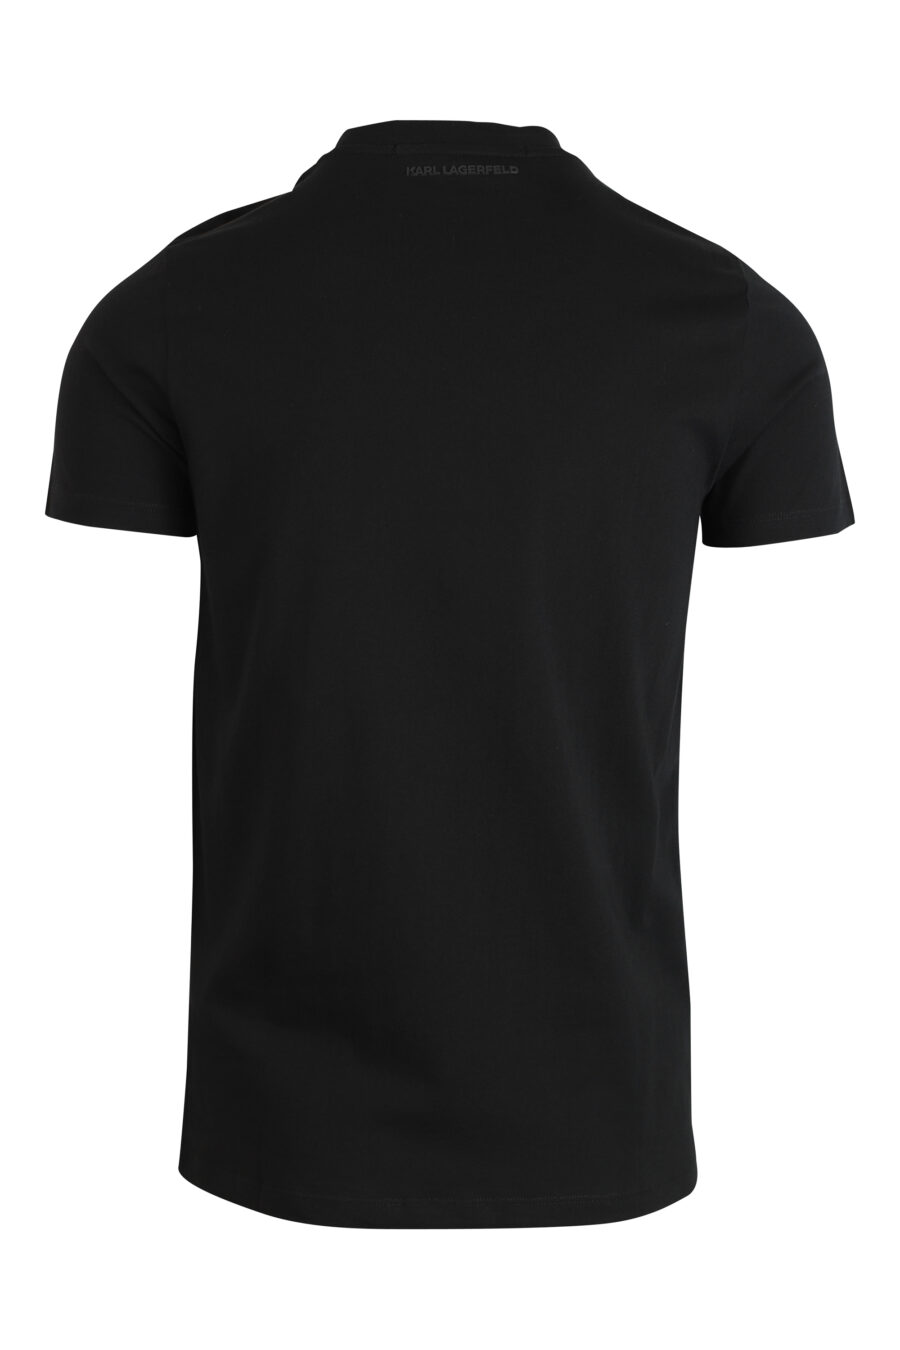 T-shirt preta com logótipo monocromático "rue st guillaume" - 4062226289306 2